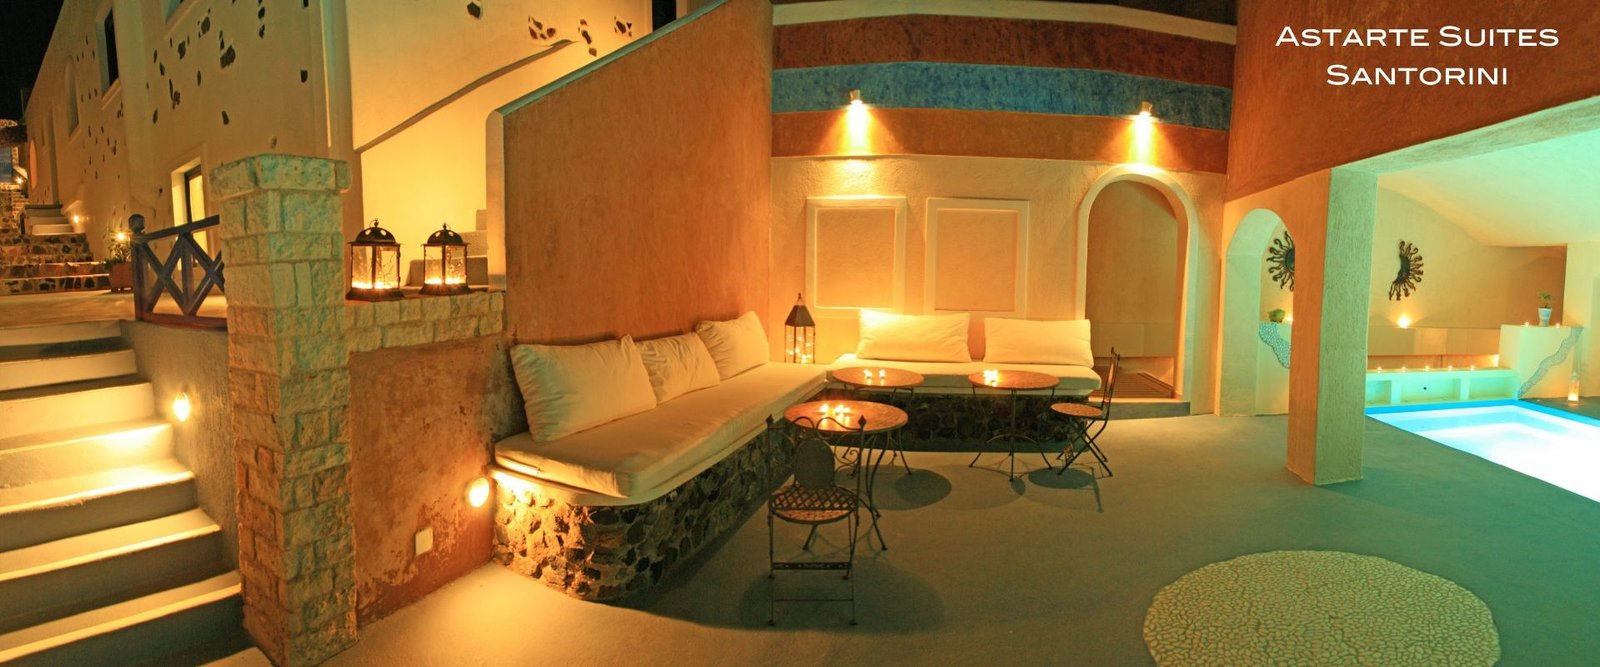 Luxury Astarte Suites, Santorini, Greece